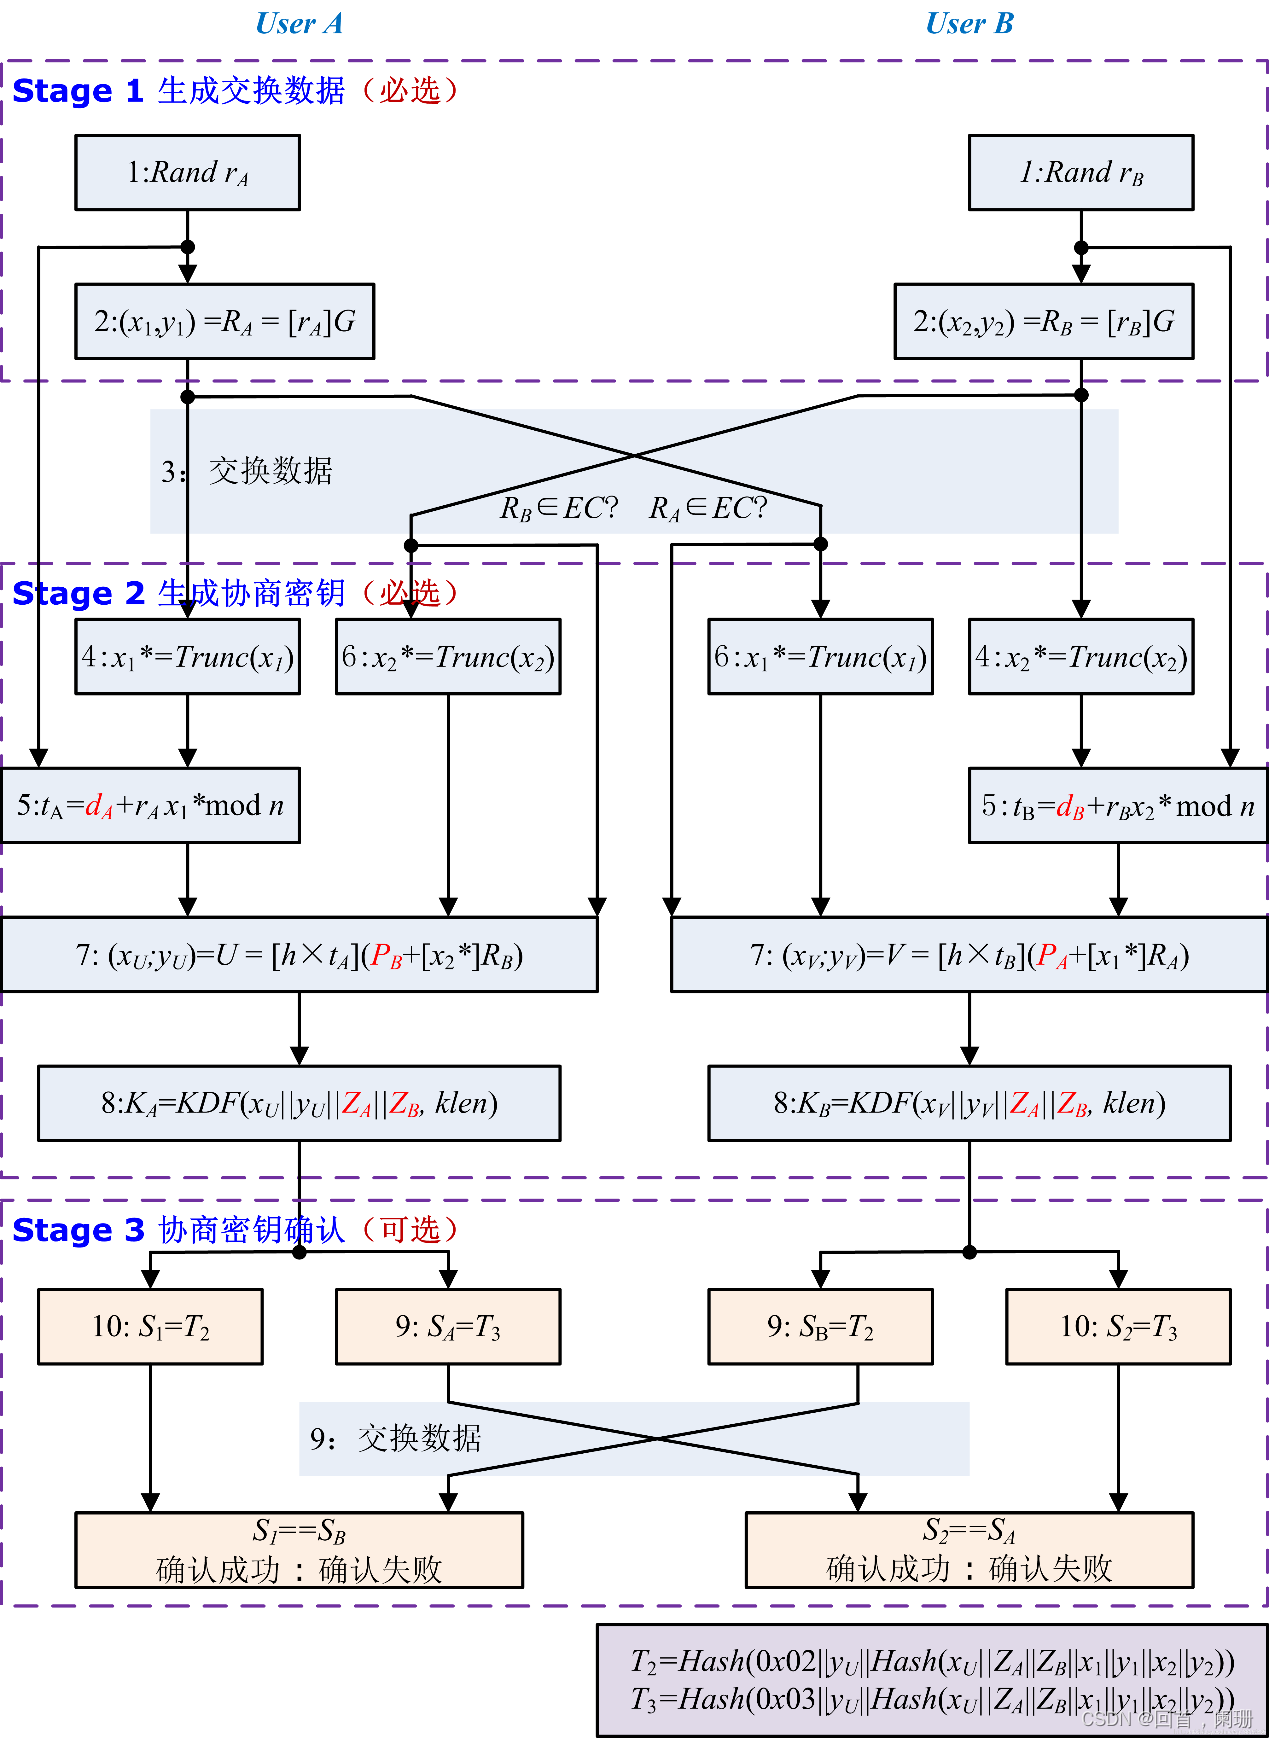 NTL密码算法开源库拓展SM2算法